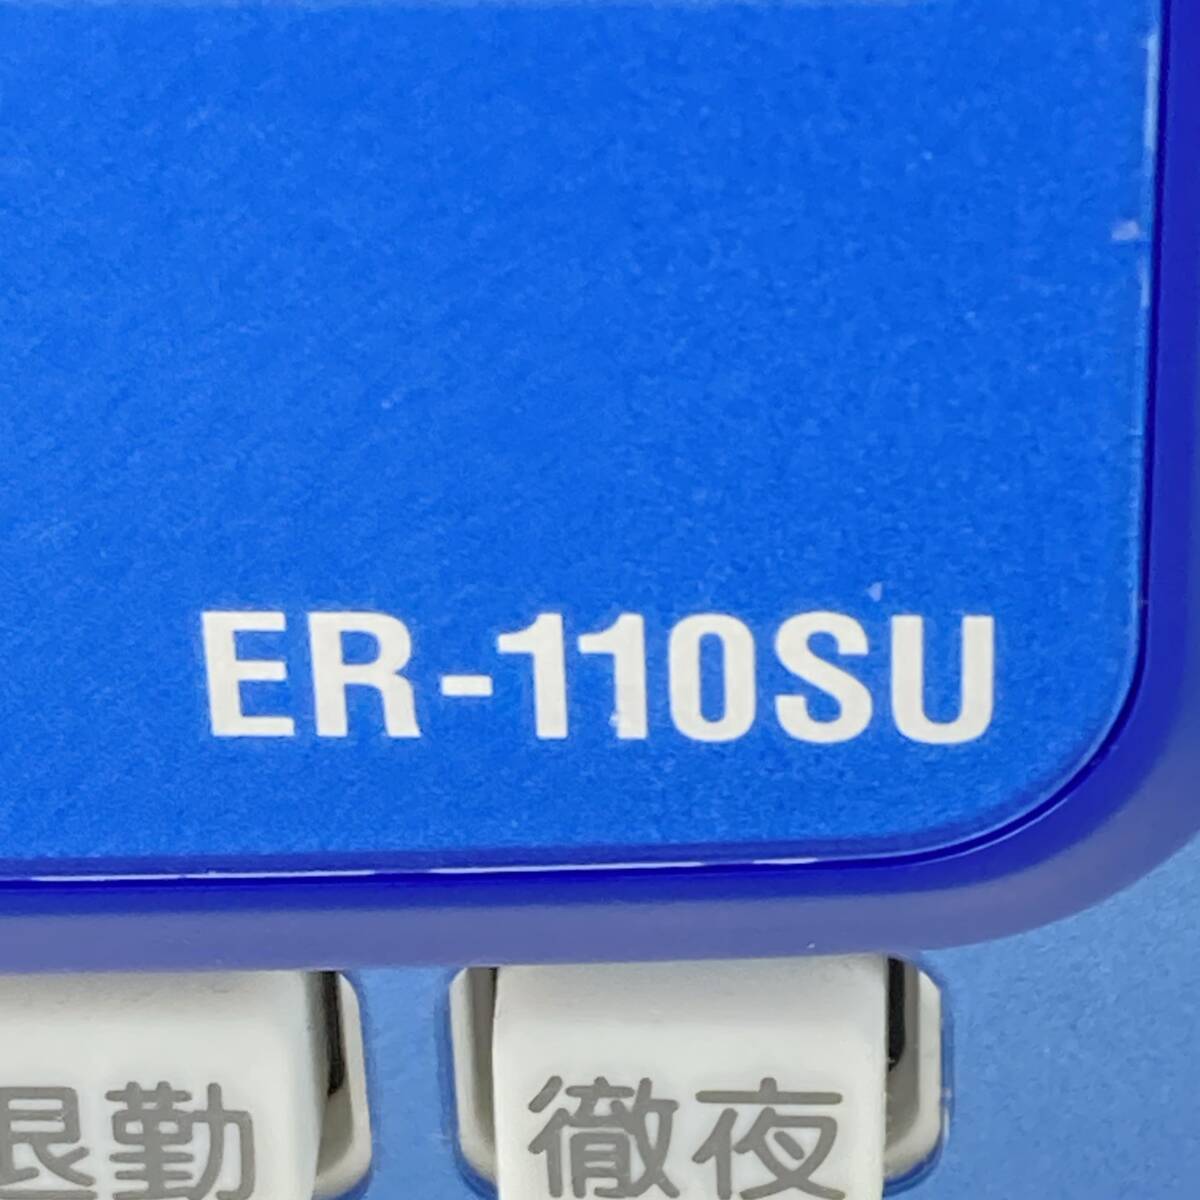 マックス タイムレコーダー ER-110SU ER90718(ホワイト)_画像6